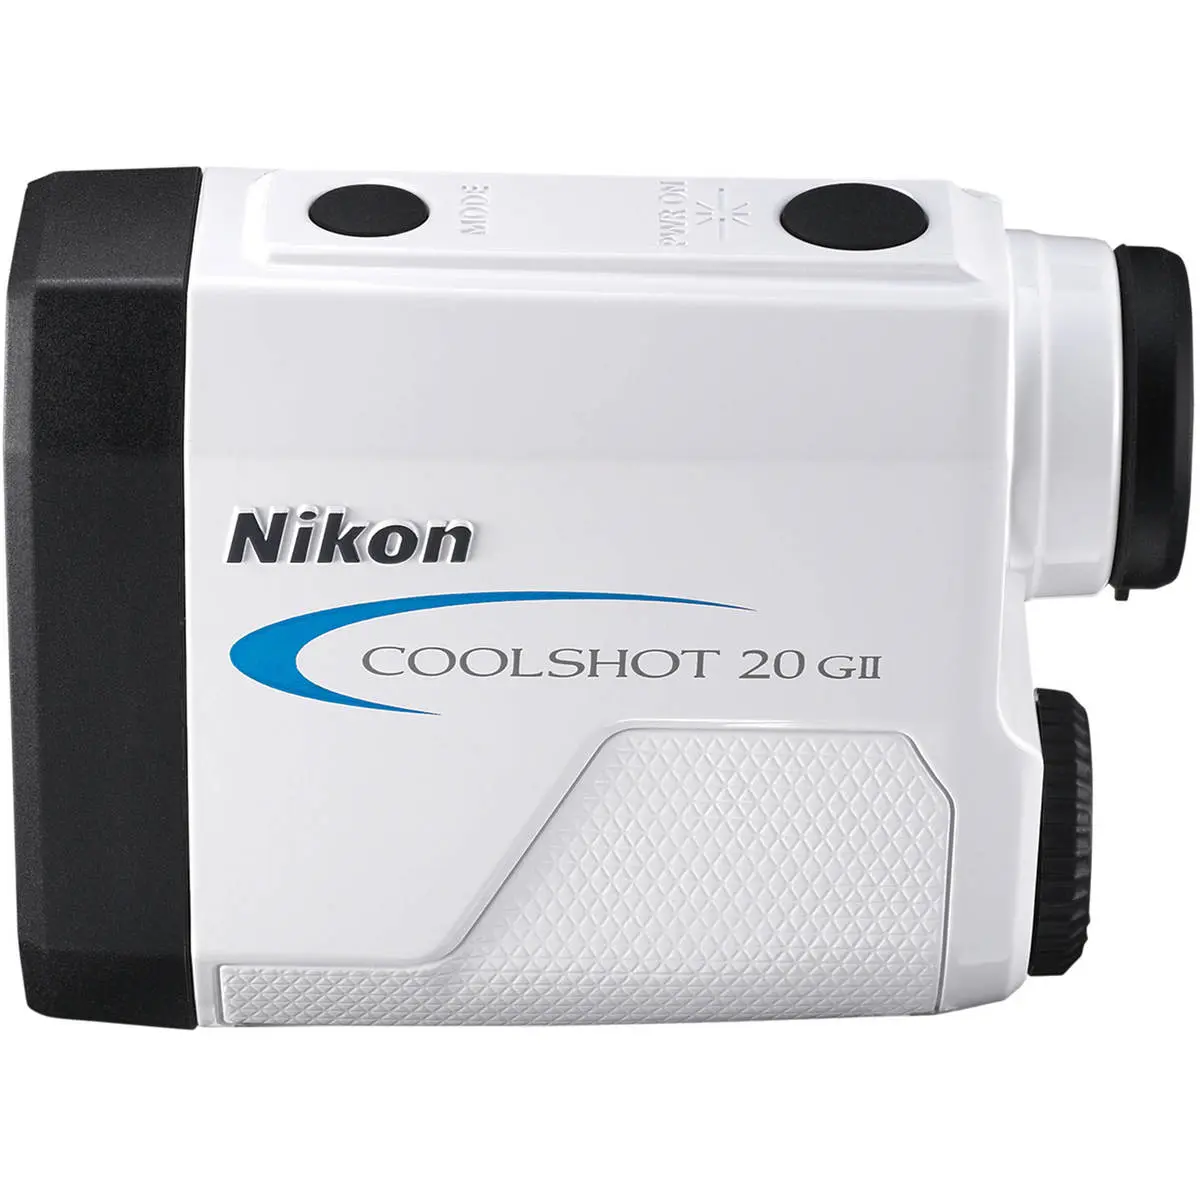 2. Nikon Coolshot 20 GII 6x20 Golf Laser Rangefinder